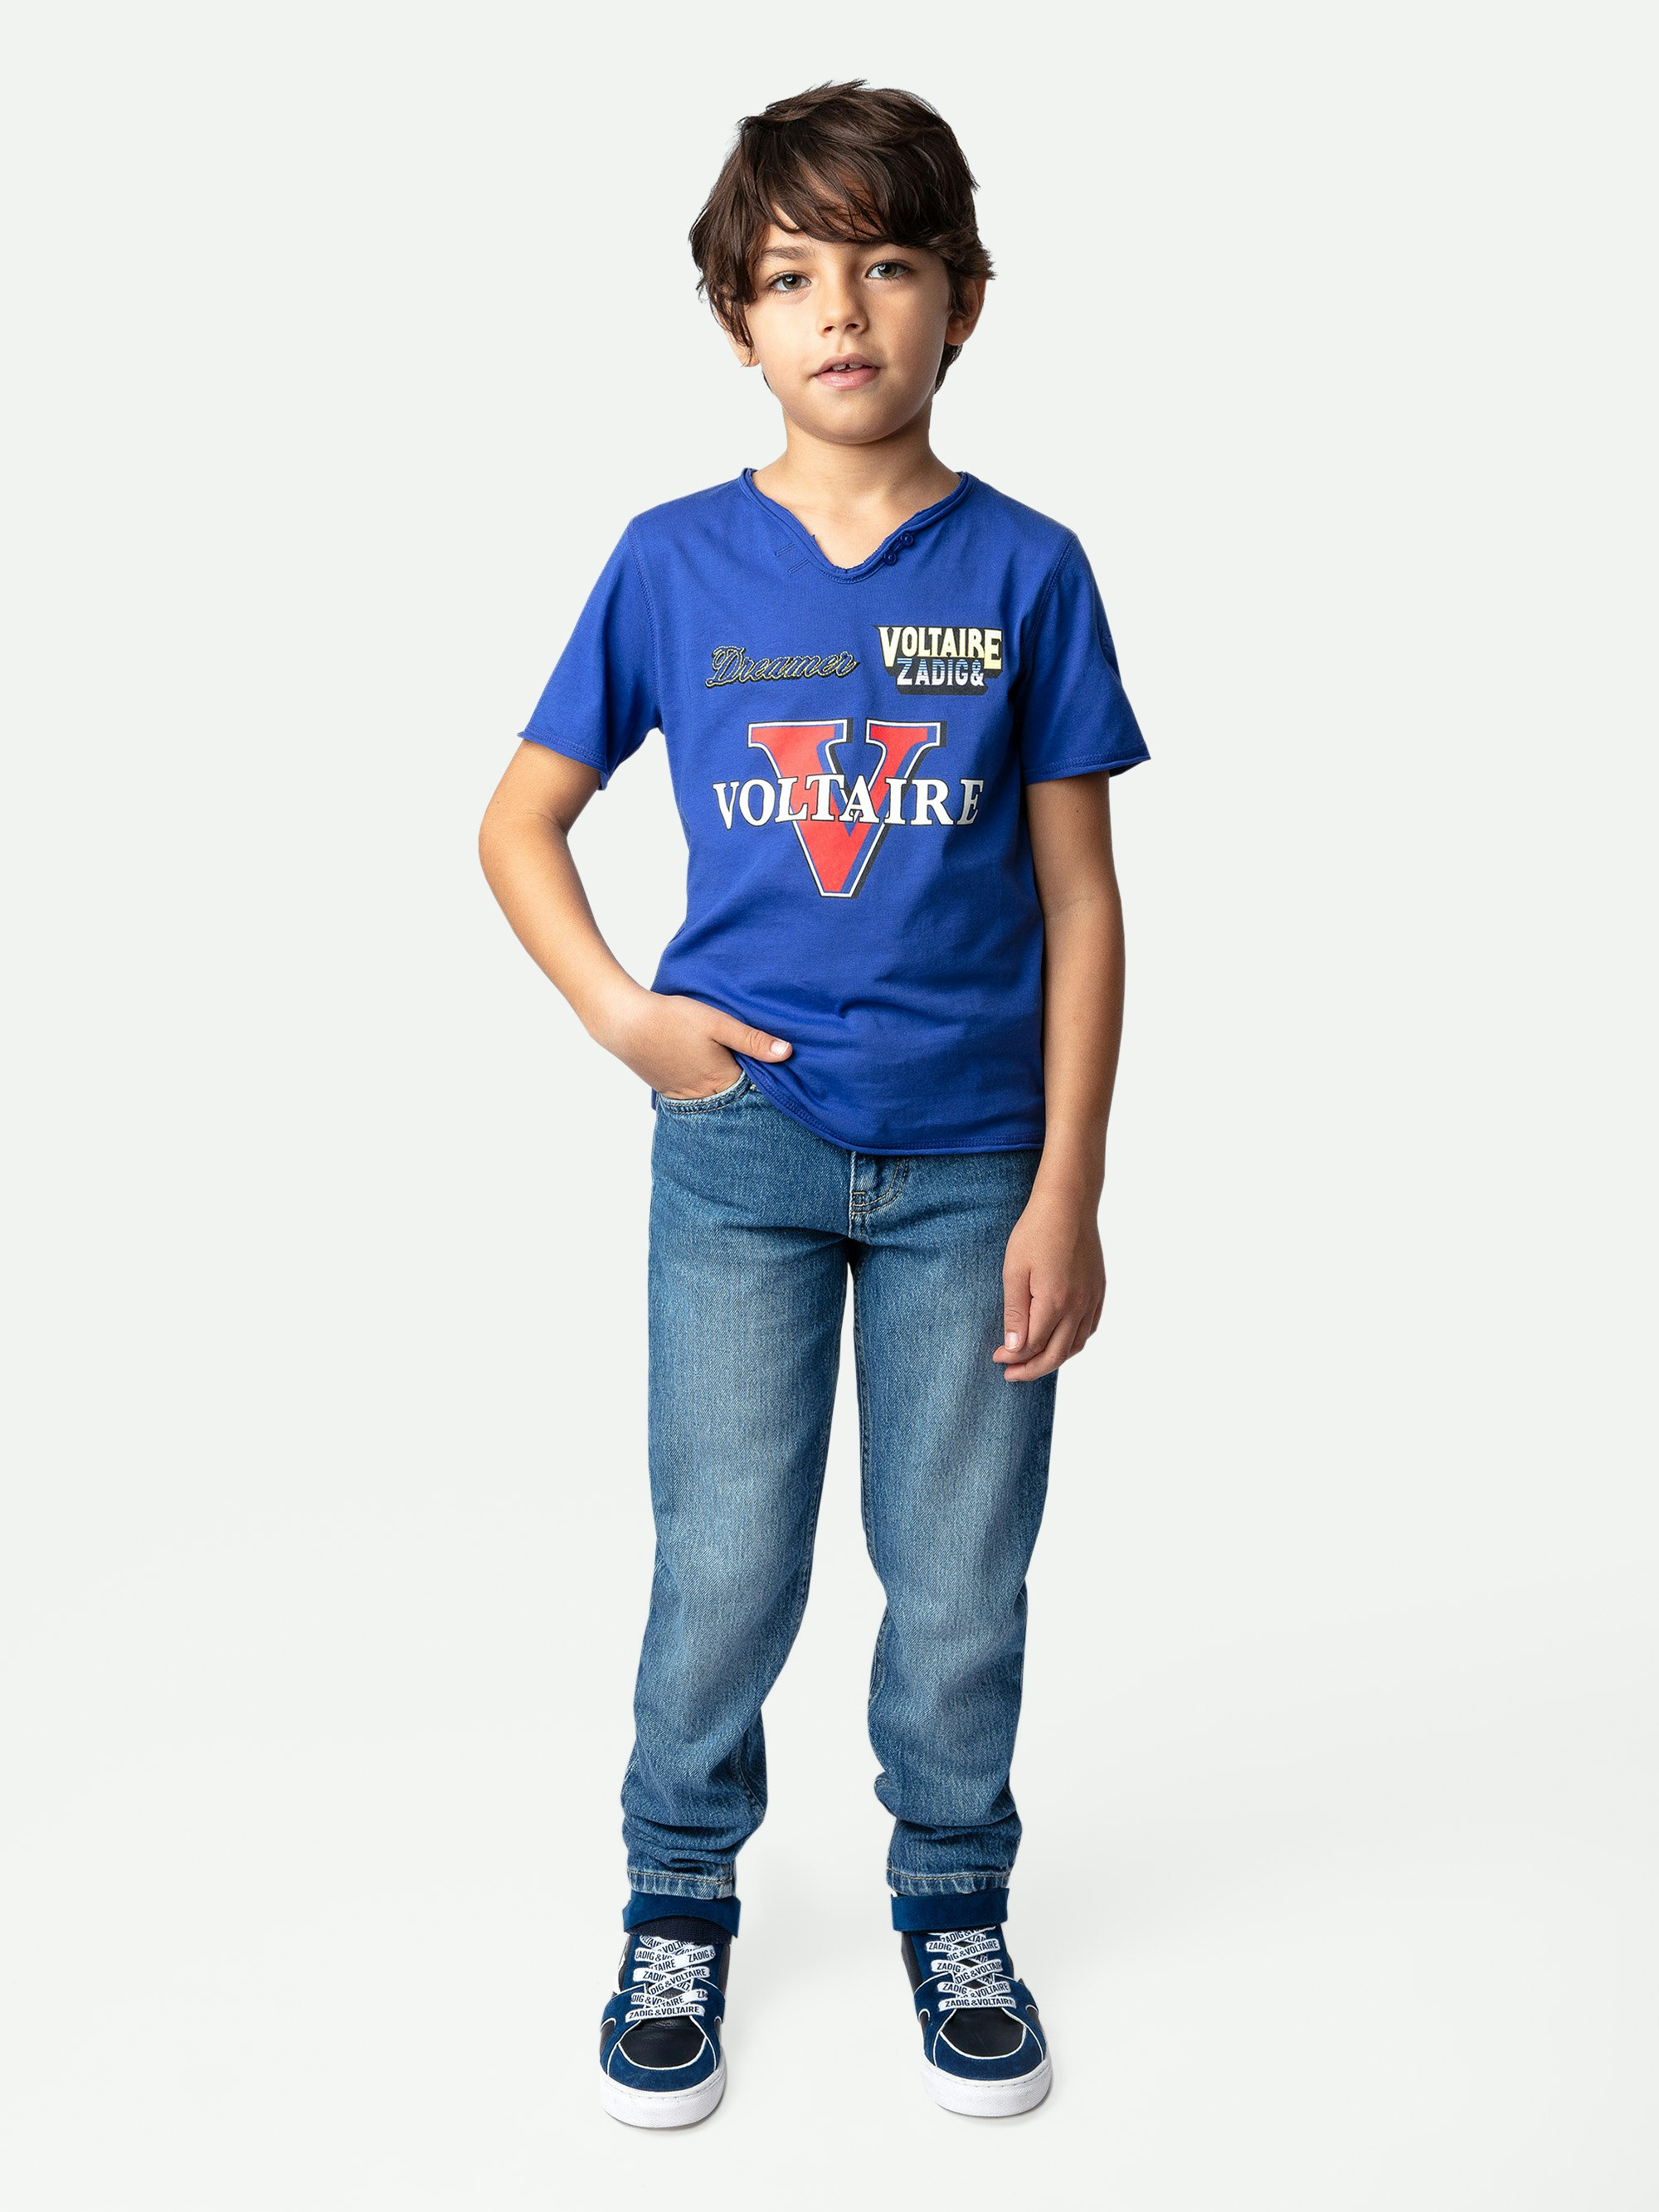 T-shirt Boxer Ragazzo - T-shirt da ragazzo a maniche corte in jersey di cotone blu decorata con illustrazioni e ricami.